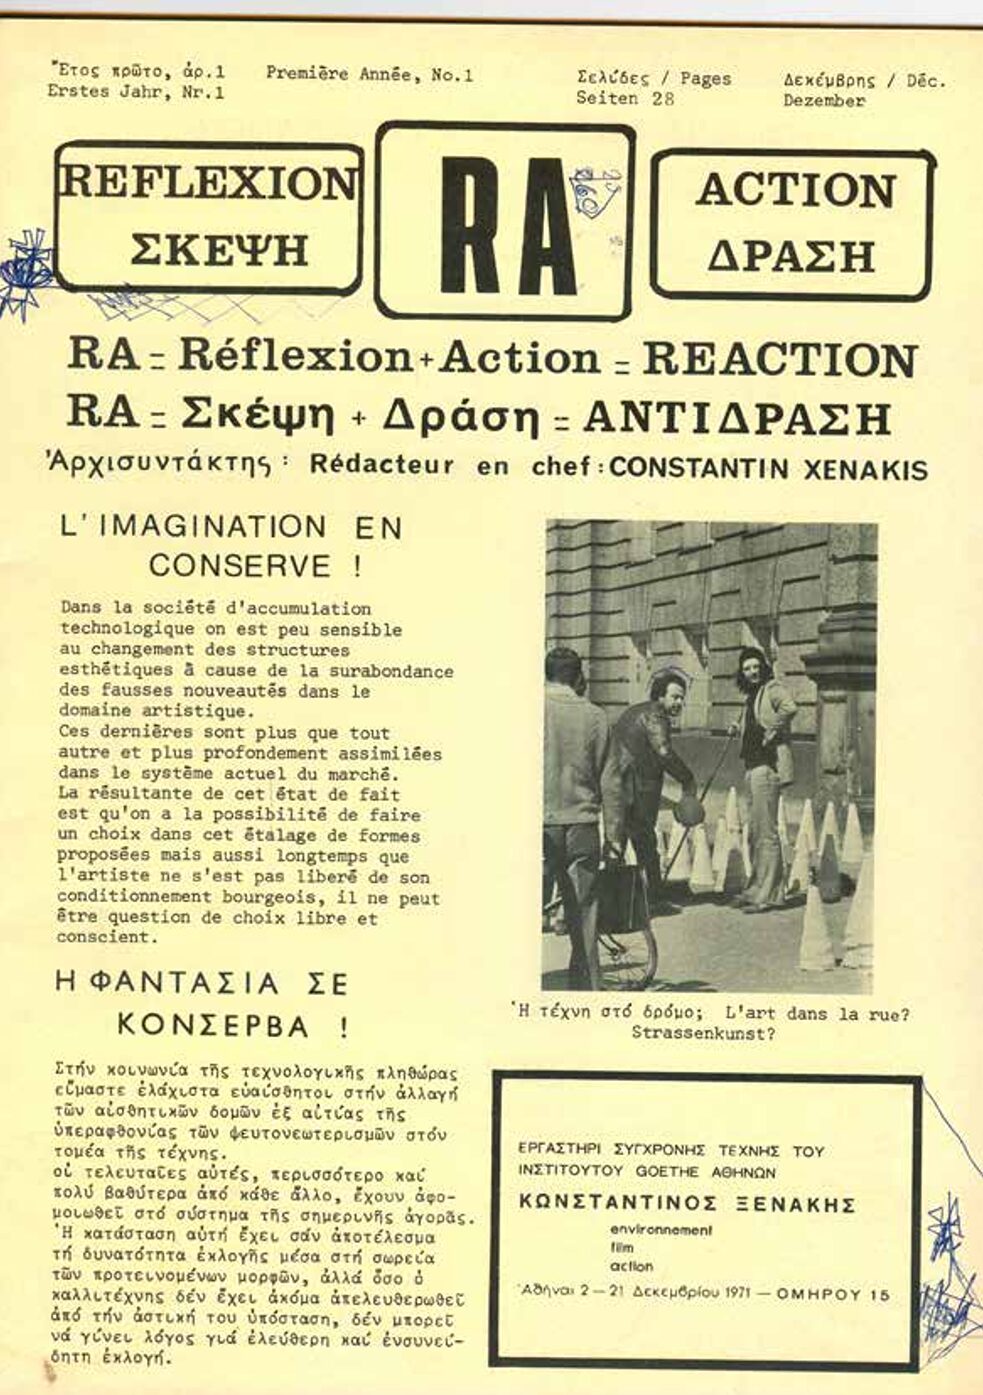 Gedrucktes Material von der Ausstellung "RA = Reflection + Action = Reaction" von Constantin Xenakis im Studio für Moderne Kunst, 1971.